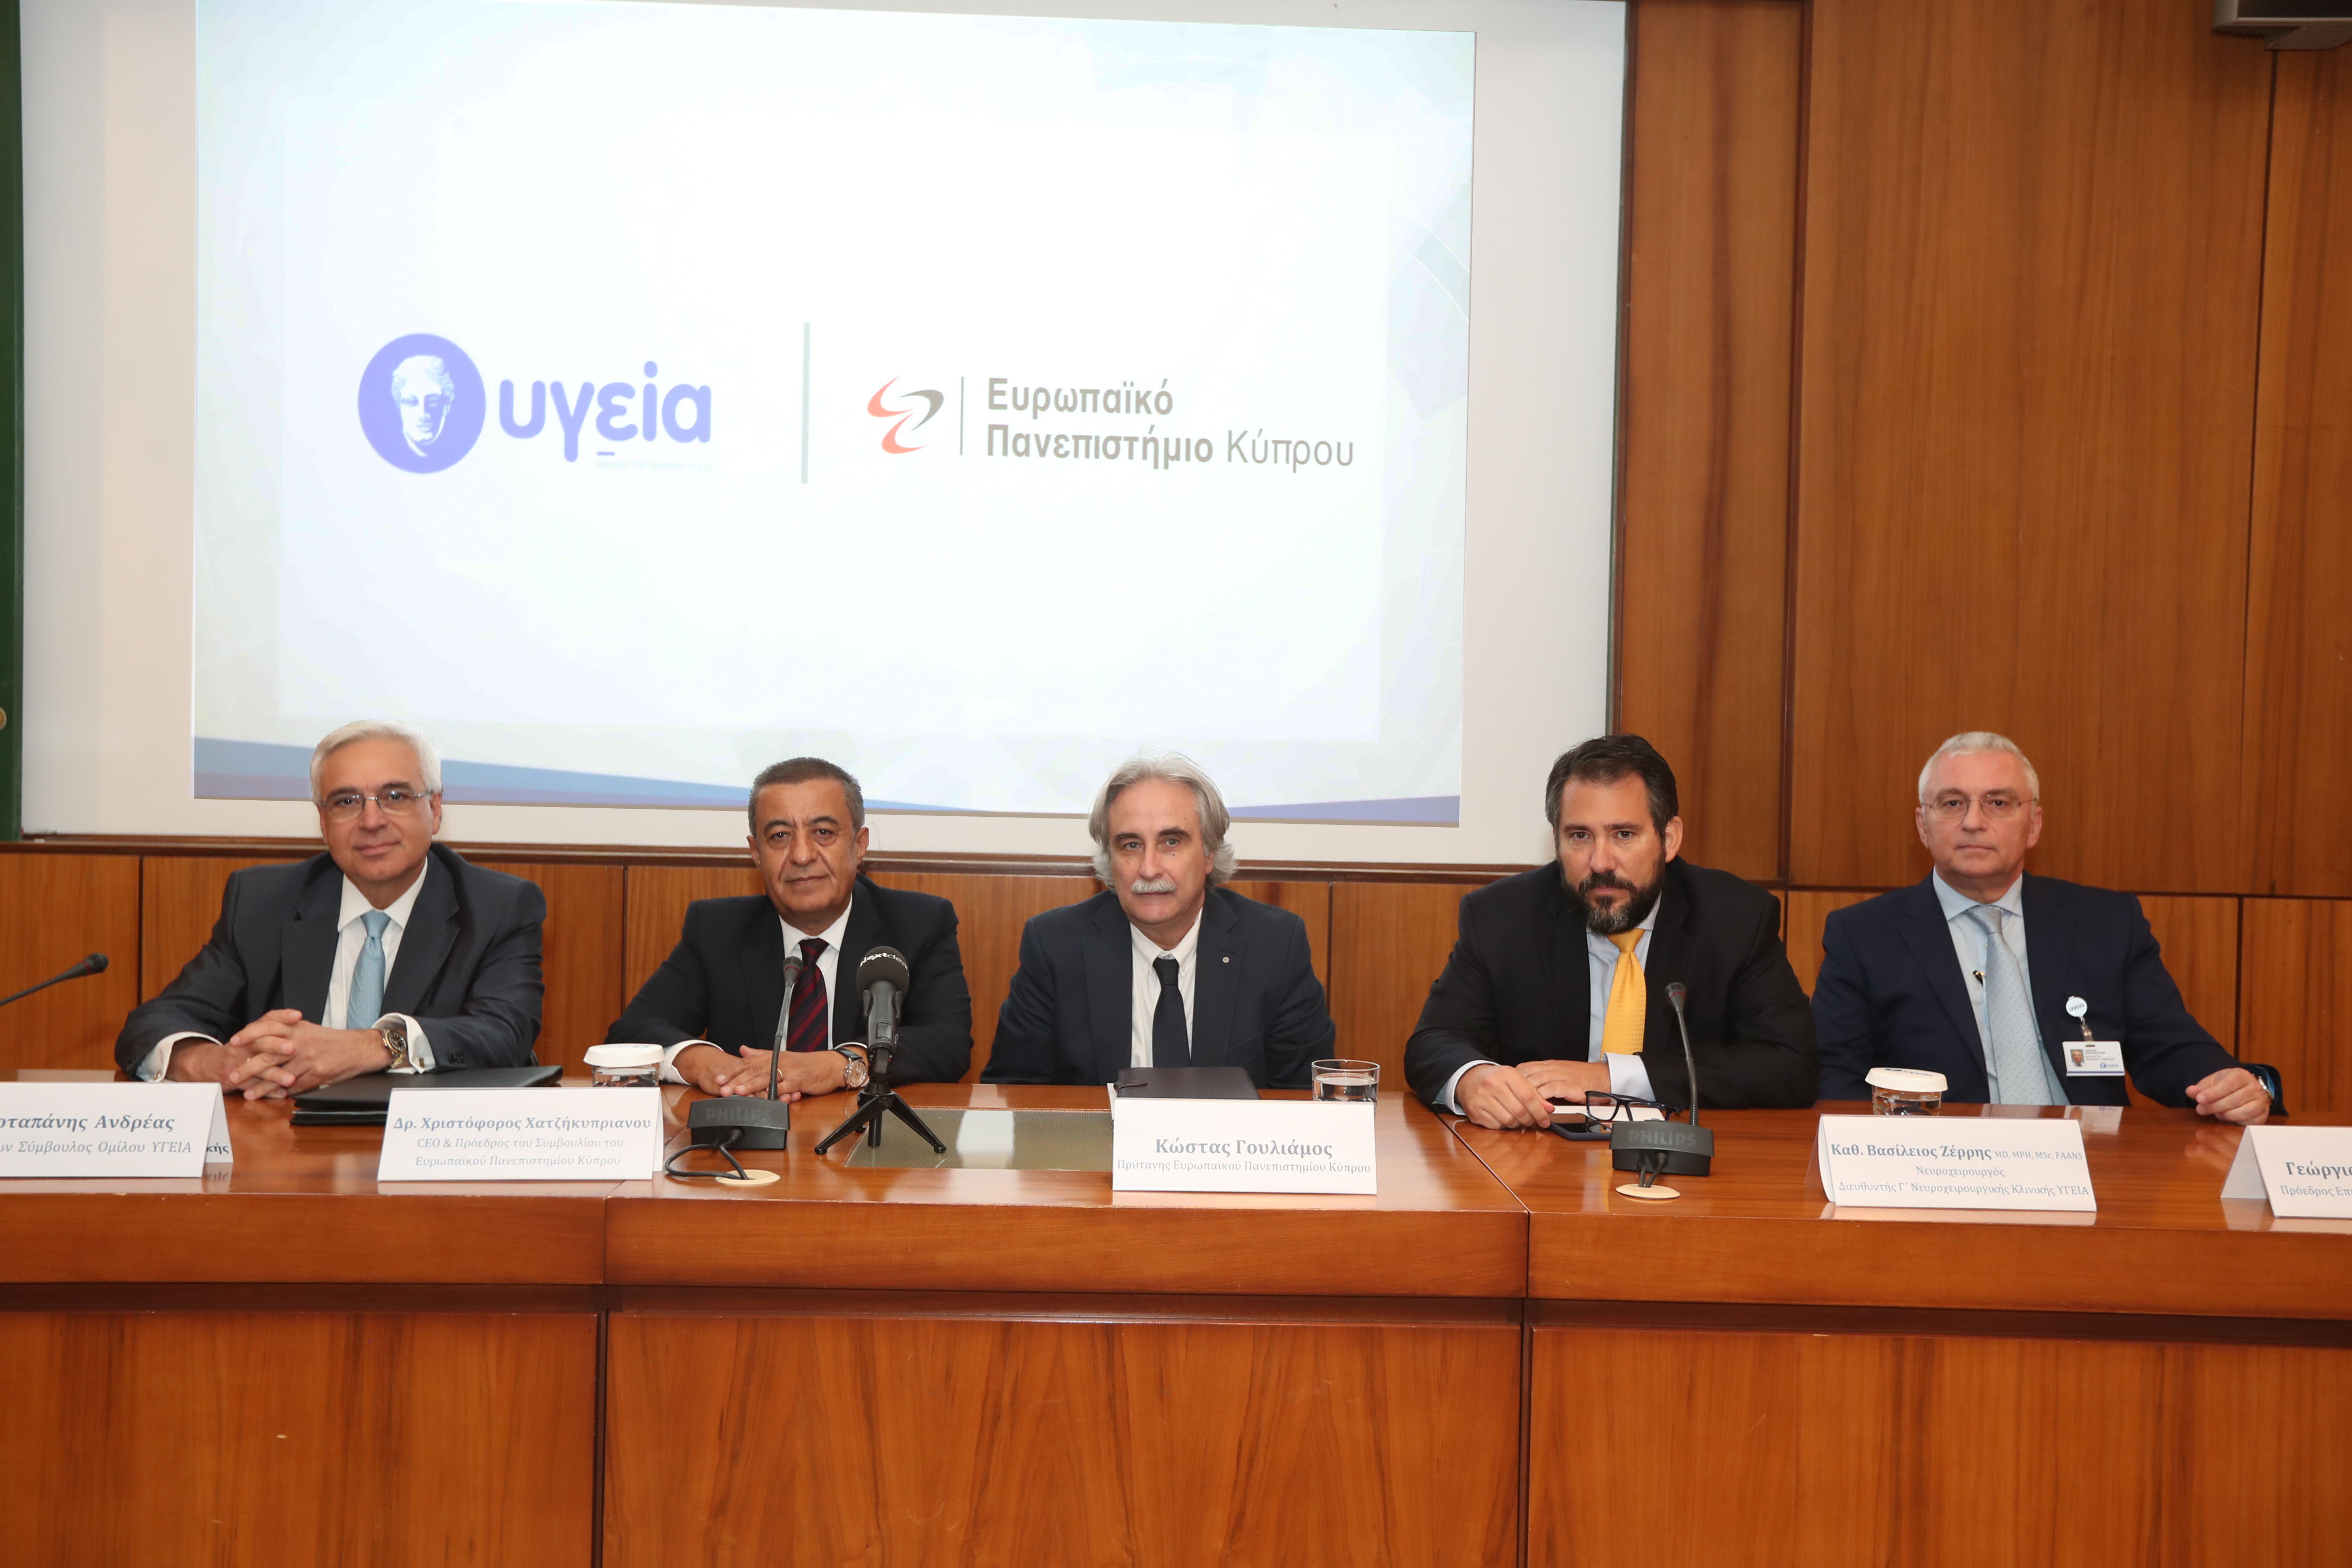 ΥΓΕΙΑ: Ακαδημαϊκή συνεργασία με την Ιατρική Σχολή του Ευρωπαϊκού Πανεπιστημίου Κύπρου